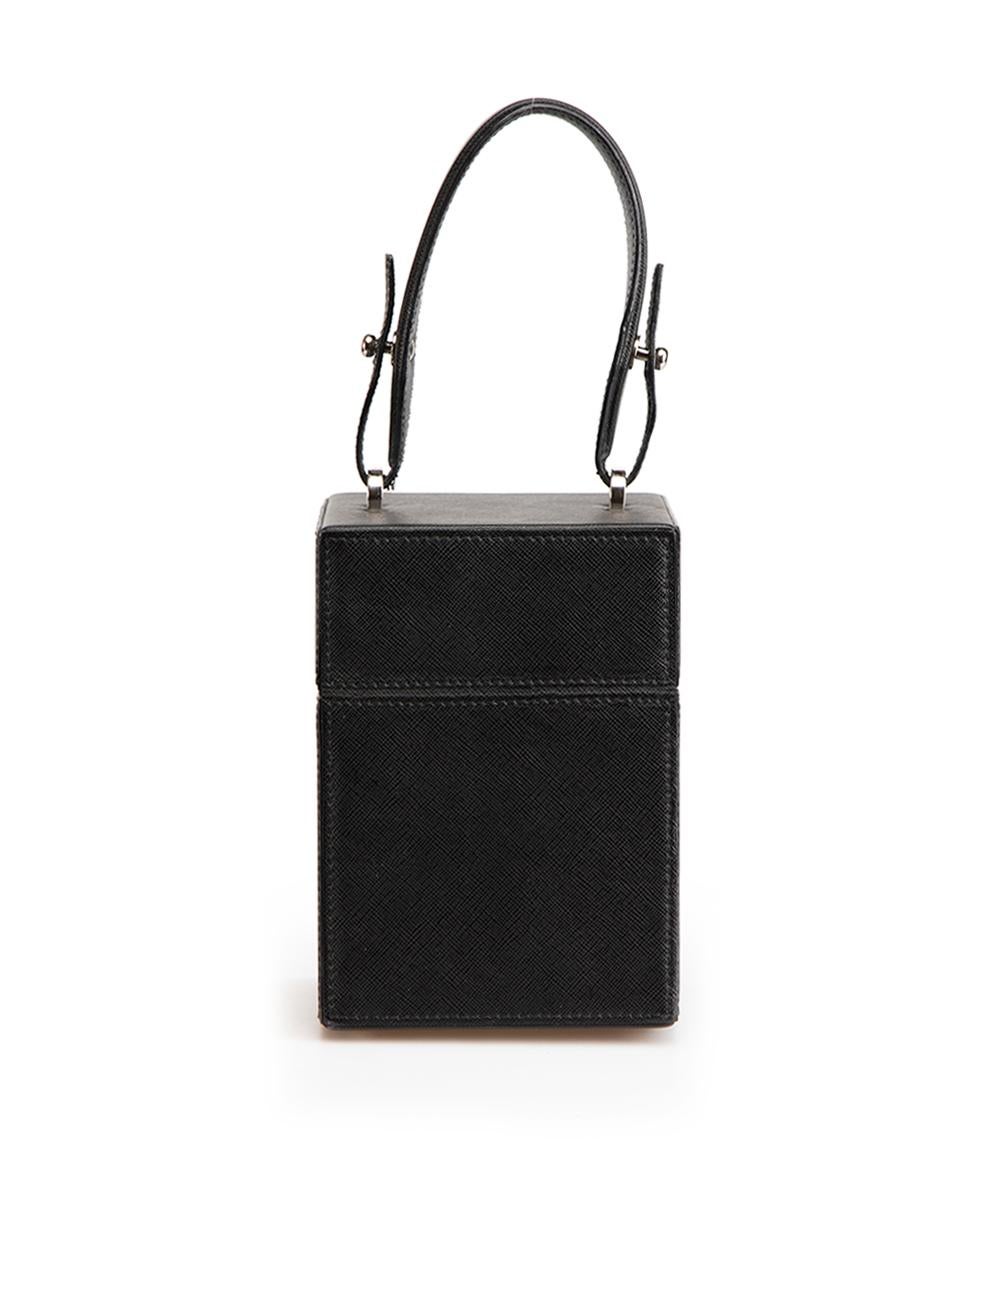 Oscar de la Renta Black & Silver Saffiano Scotchgrain Leather Alibi Bag In Good Condition In London, GB